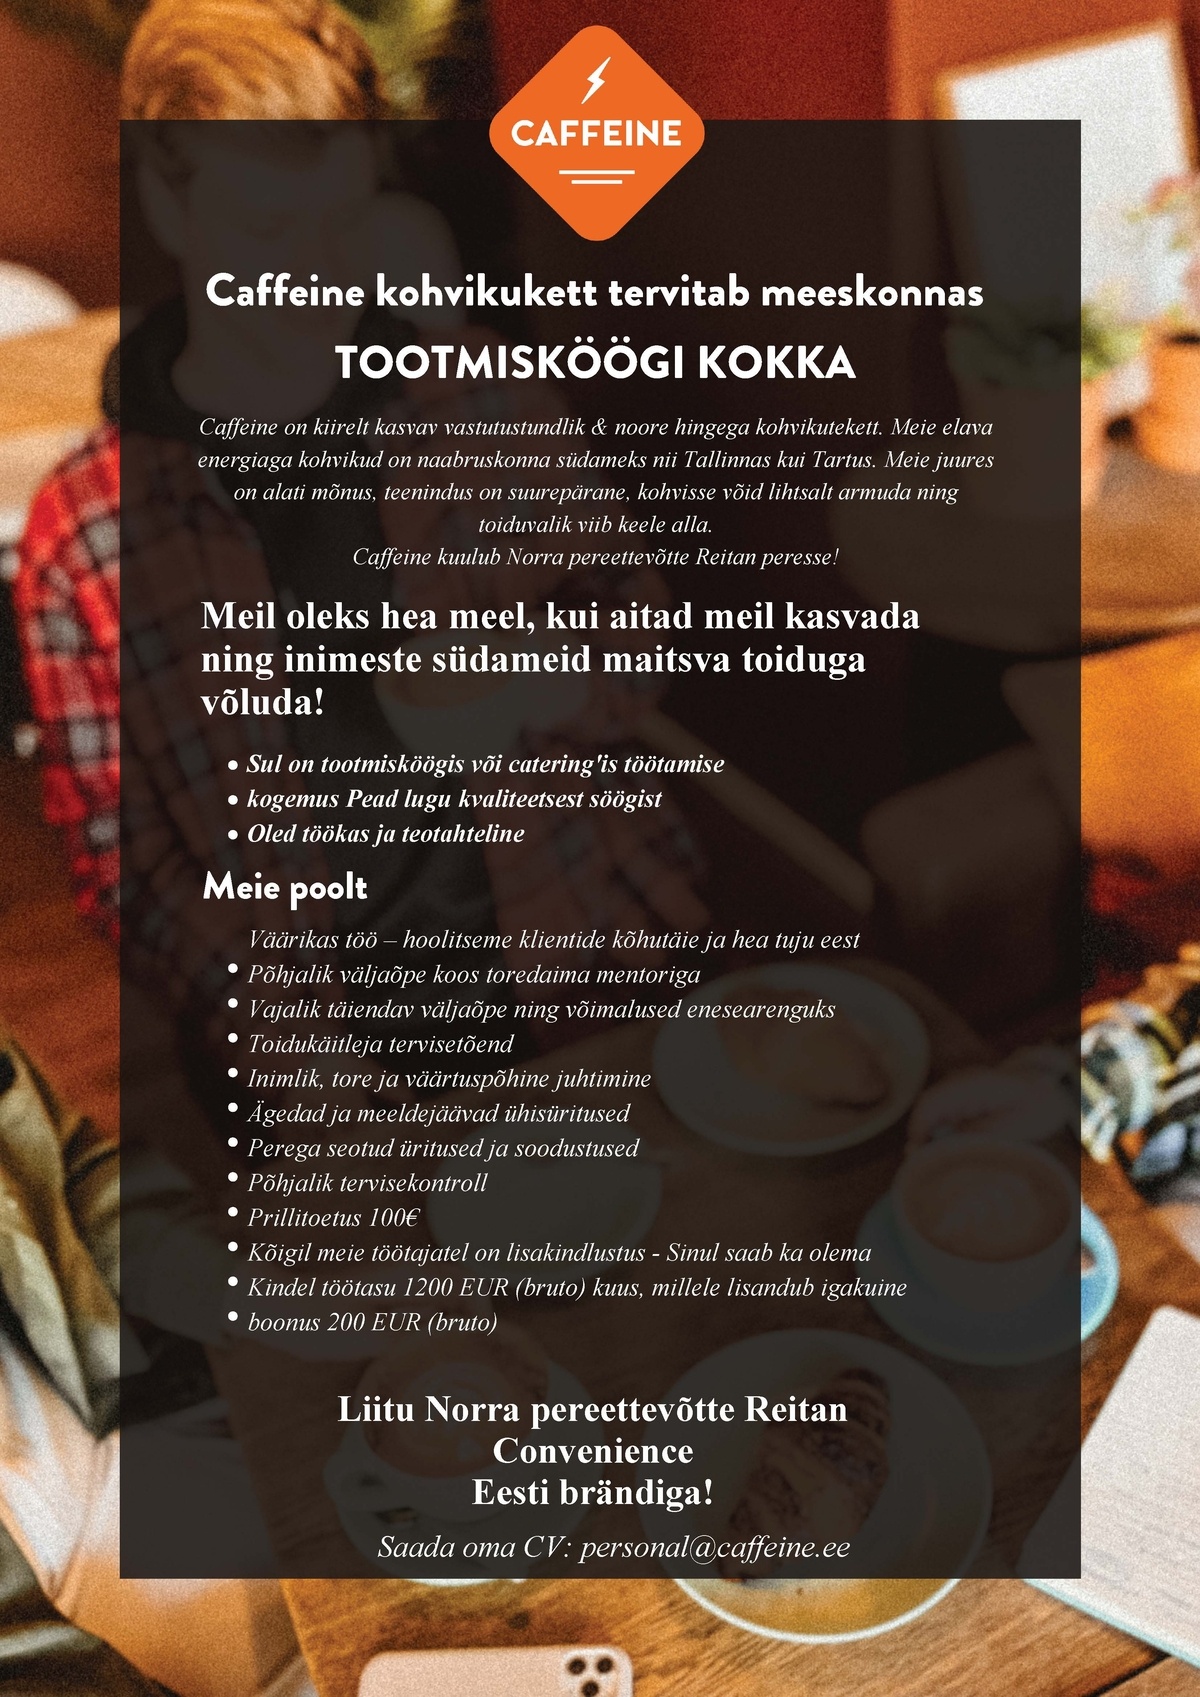 R-Kiosk Estonia AS Tootmisköögi kokk